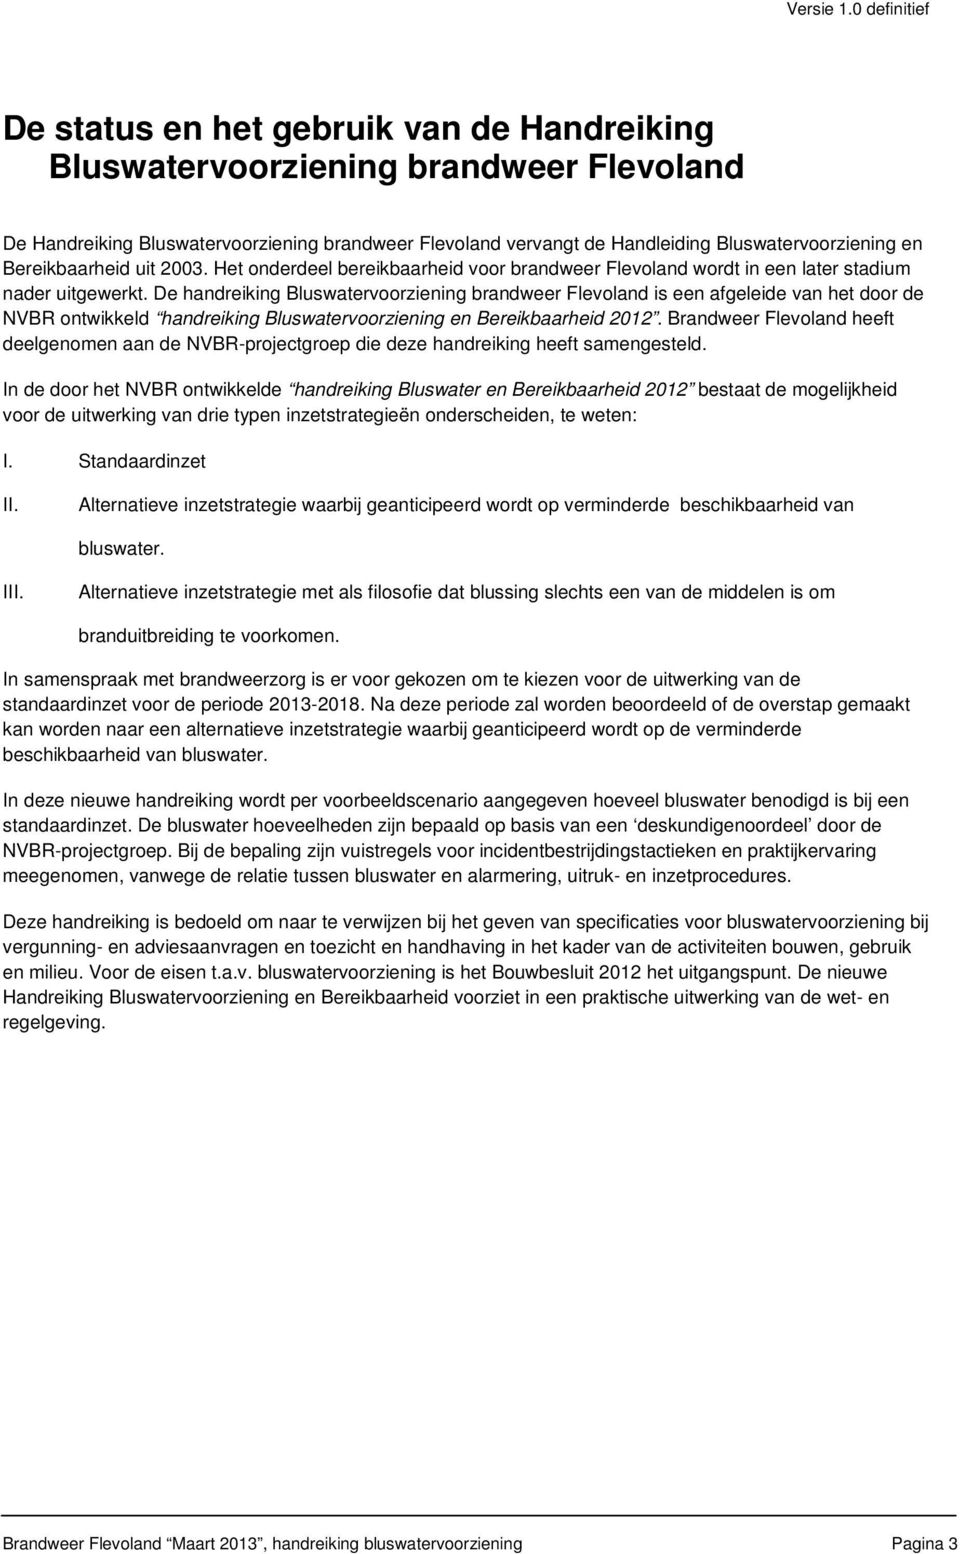 en Bereikbaarheid uit 2003. Het onderdeel bereikbaarheid voor brandweer Flevoland wordt in een later stadium nader uitgewerkt.